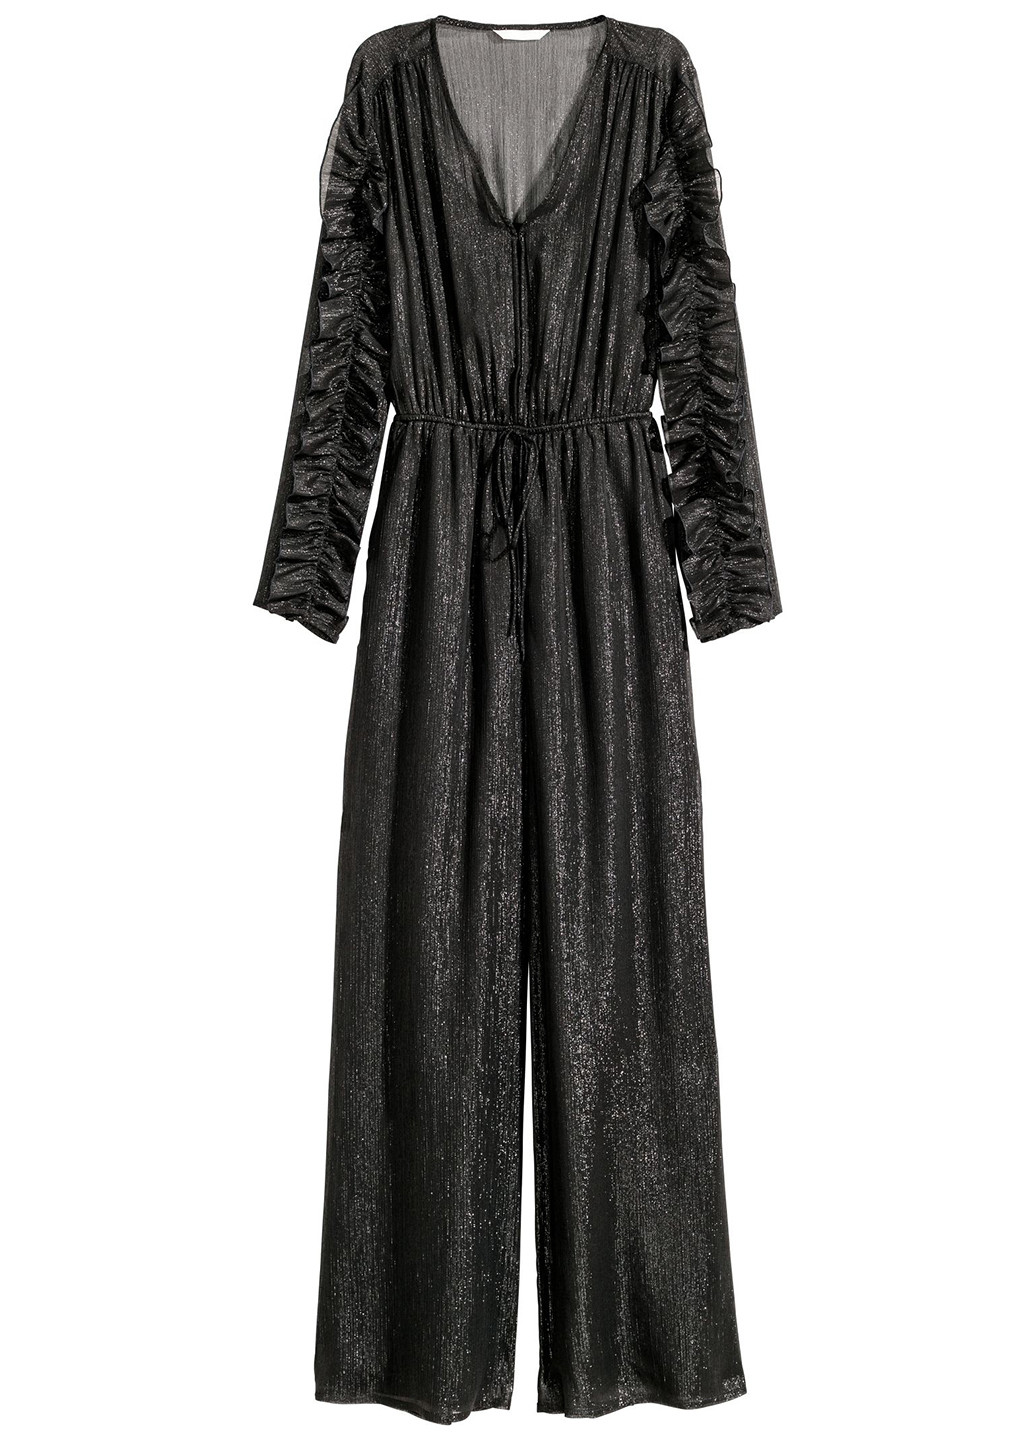 Комбинезон H&M комбинезон-брюки однотонный чёрный вечерний шифон, полиэстер